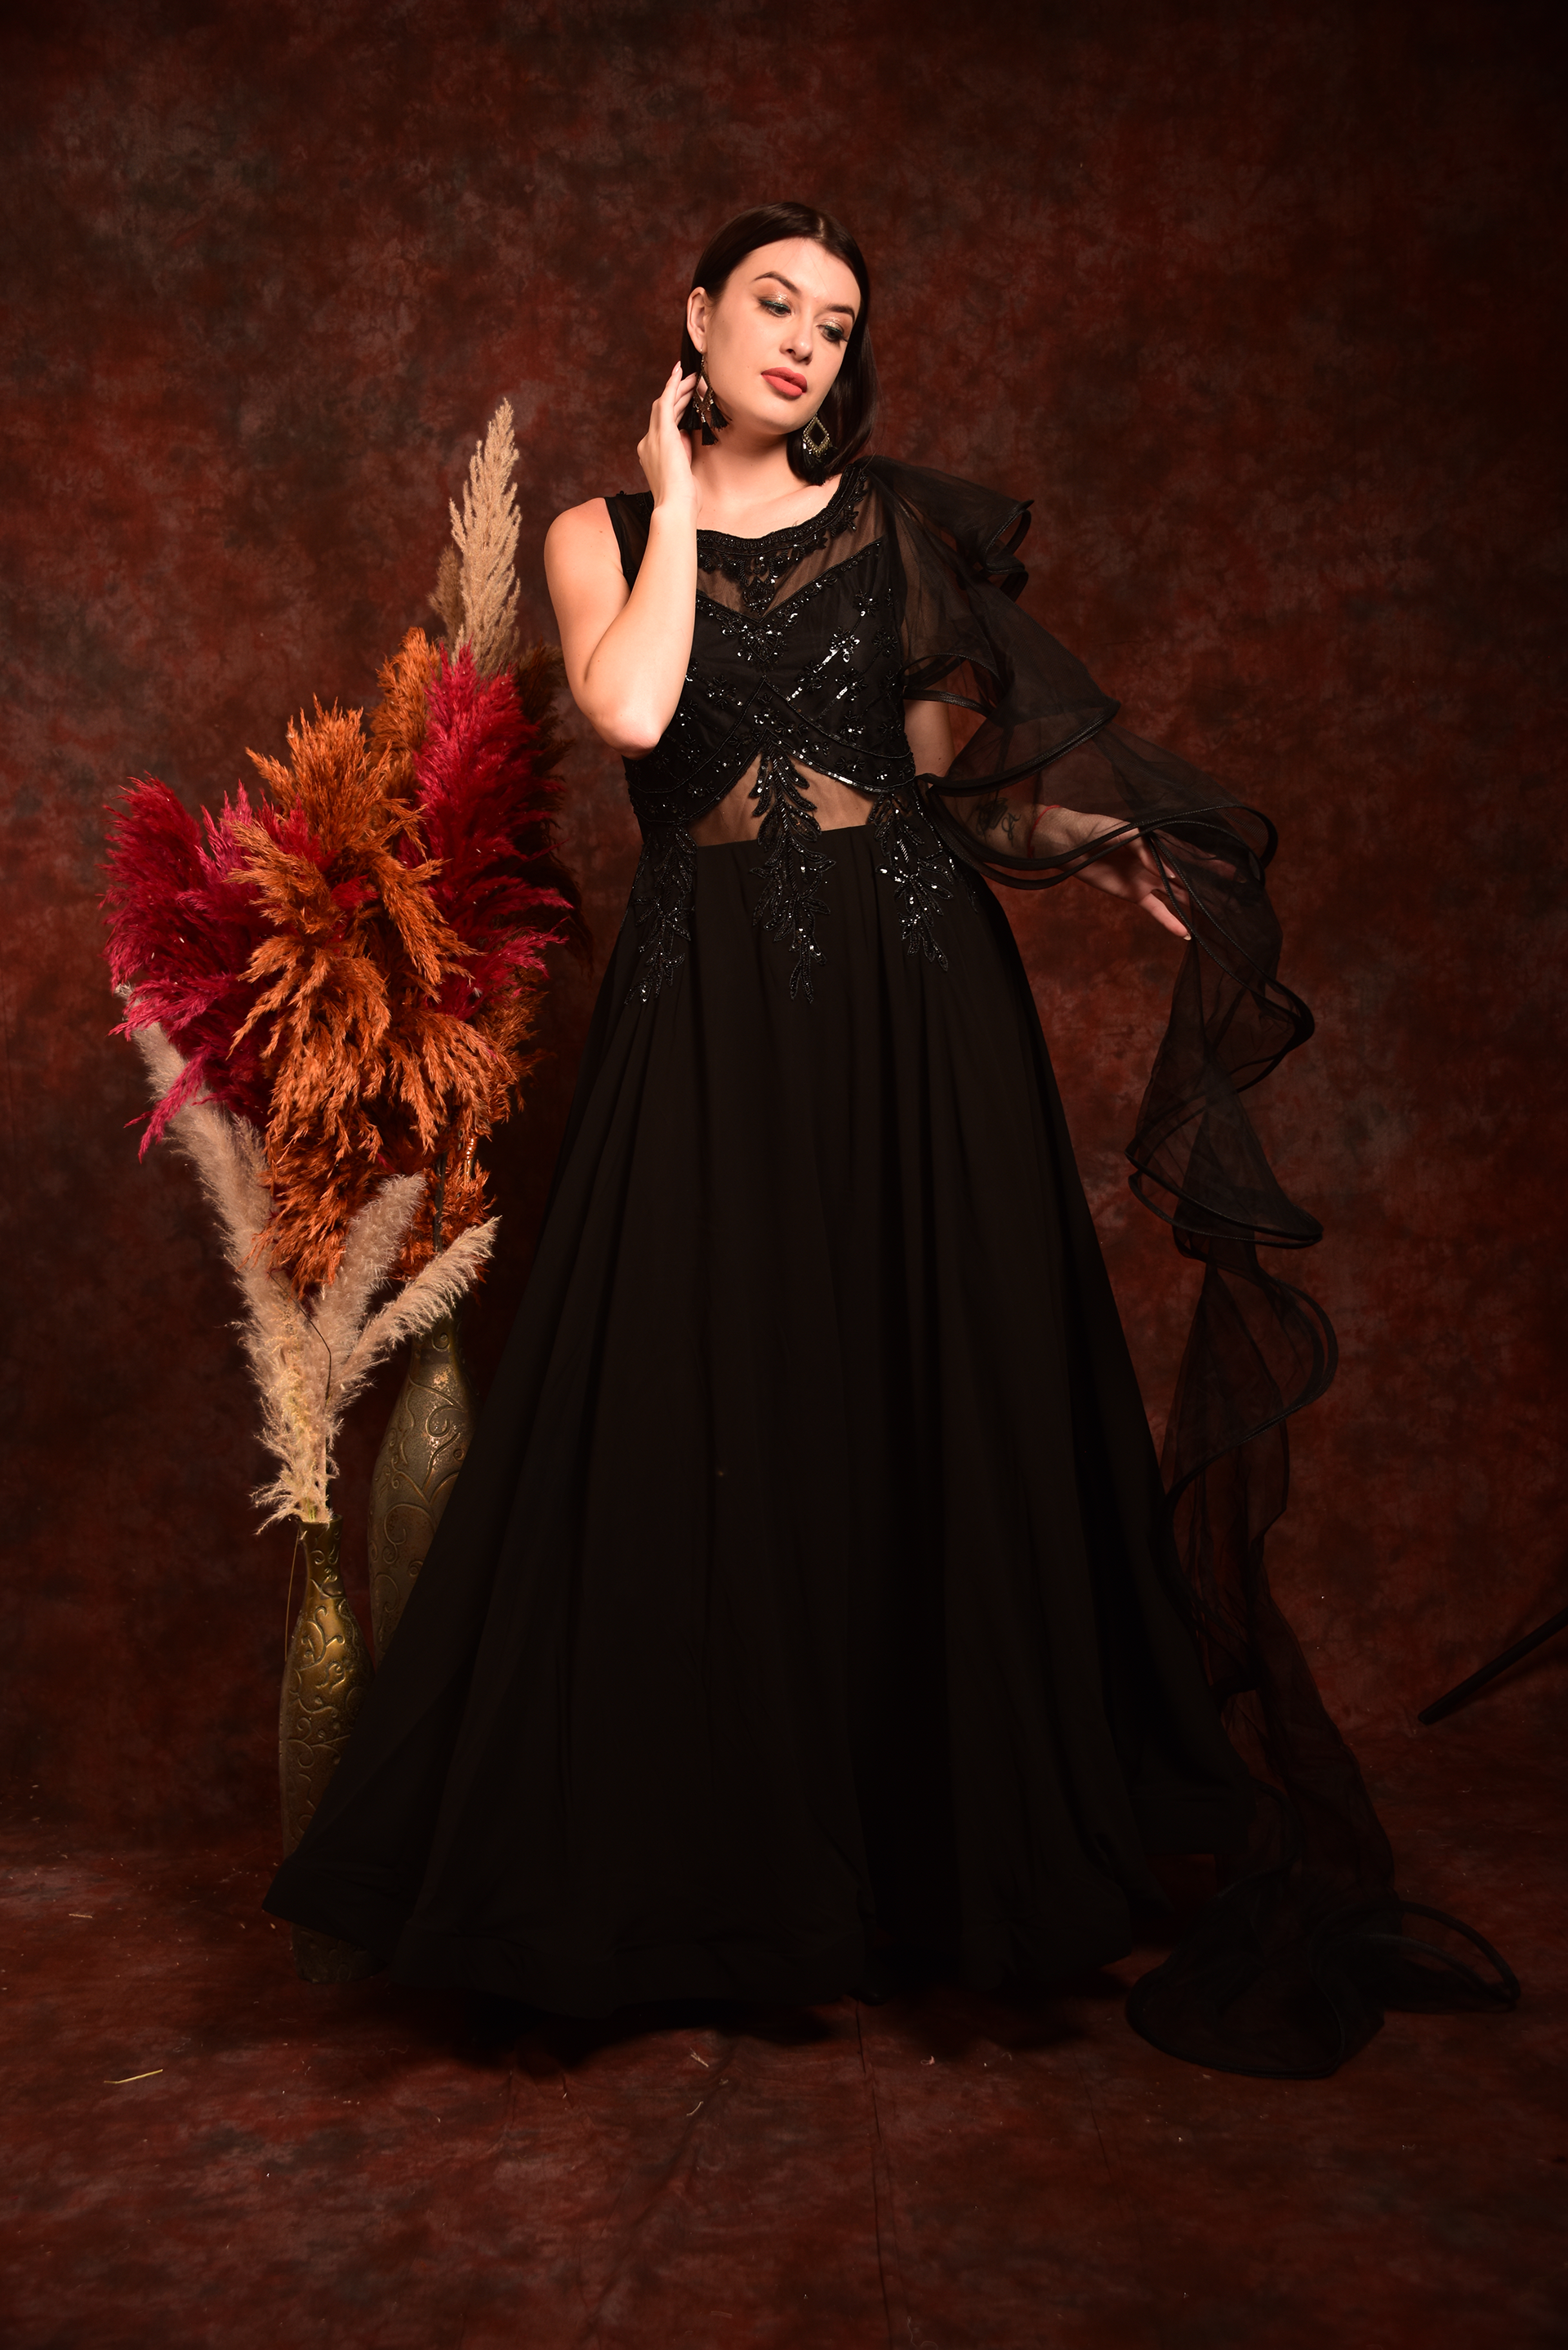 Devil Fashion Covetous Nature Womens Long Gothic Ballgown Wedding Dres –  Violent Delights